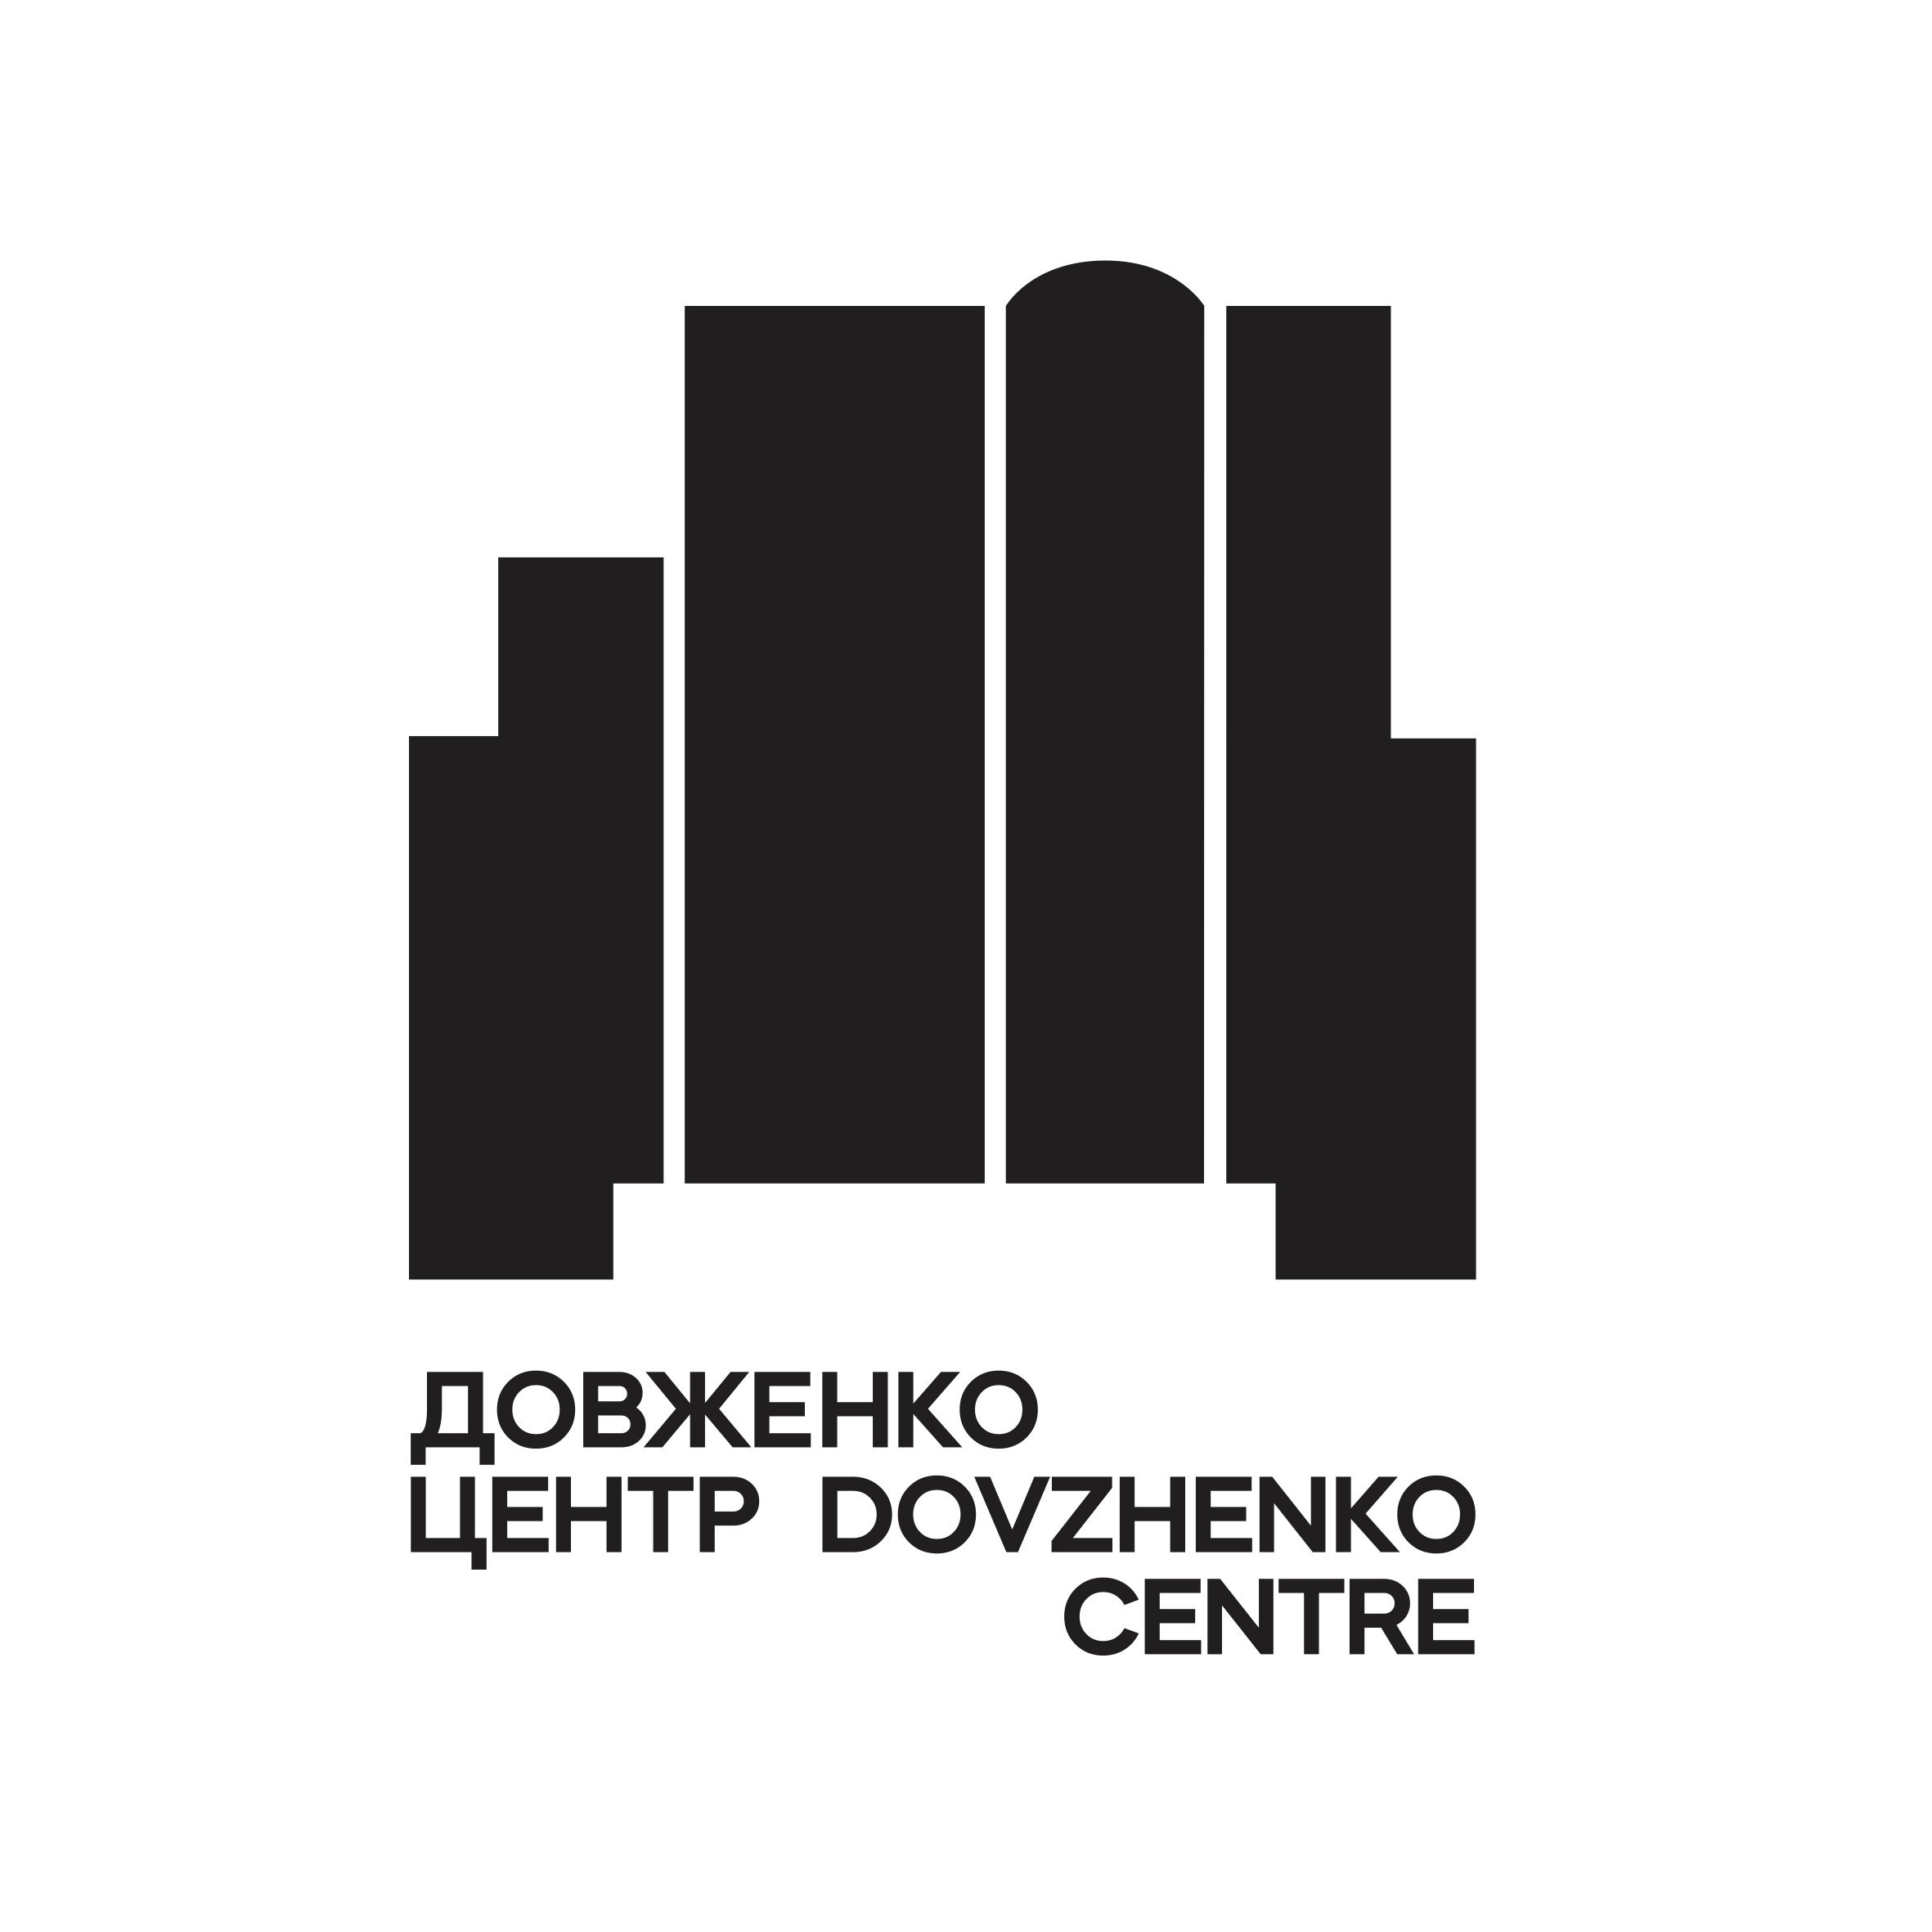 DovzhenkoCentre_logo.jpg